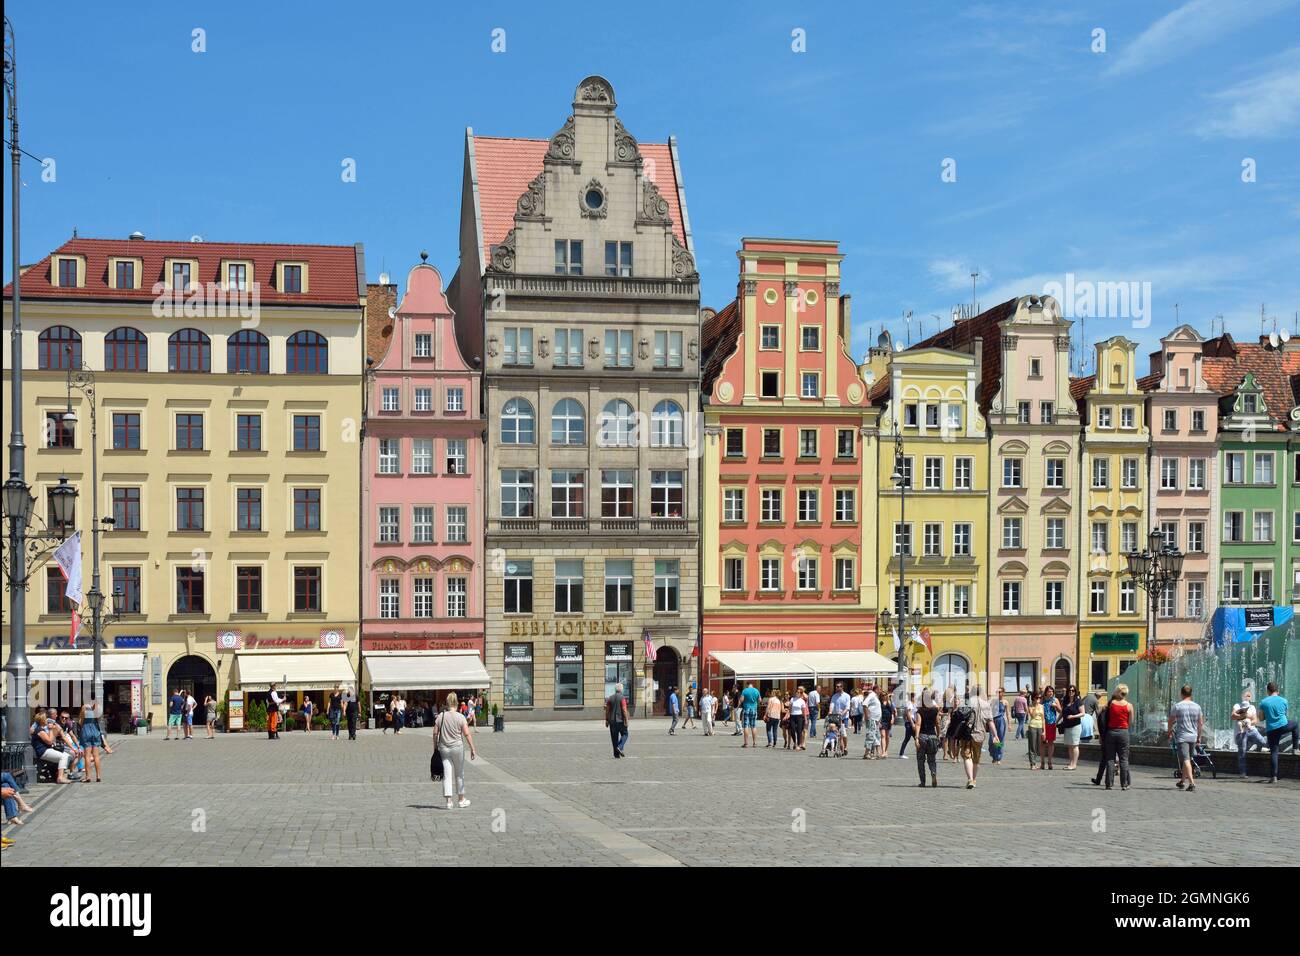 Wrocław, Niederschlesien, Polen - 19. Juni 2016: Peoplewalking auf dem Marktplatz in der historischen Altstadt von Breslau in Polen. Stockfoto